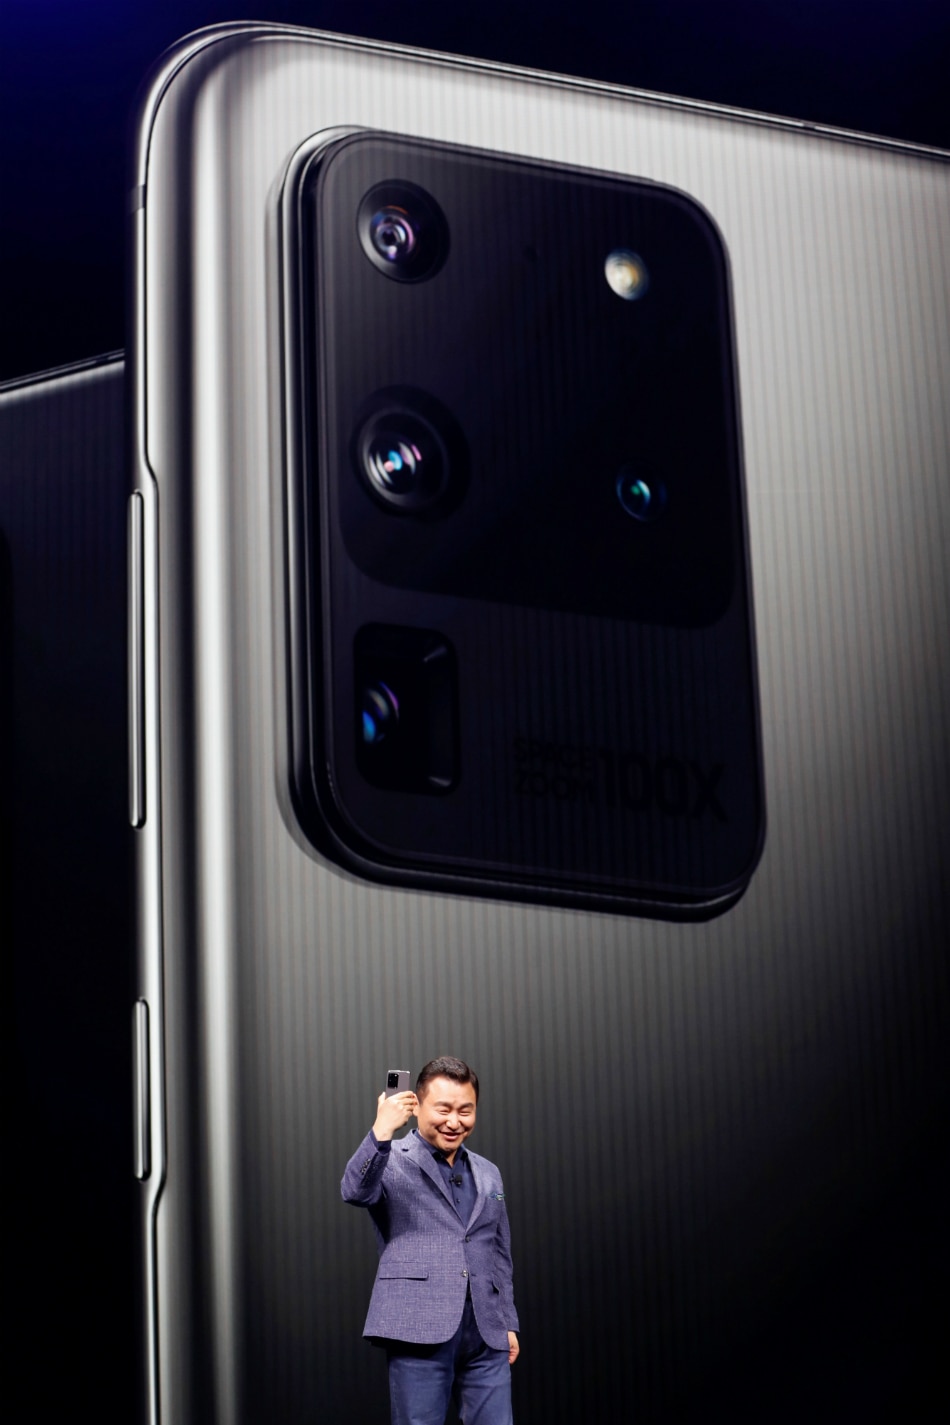 Galaxy S20 Ultra with 100x zoom, Galaxy Z Flip: Samsung unwraps 2020 flagships 1